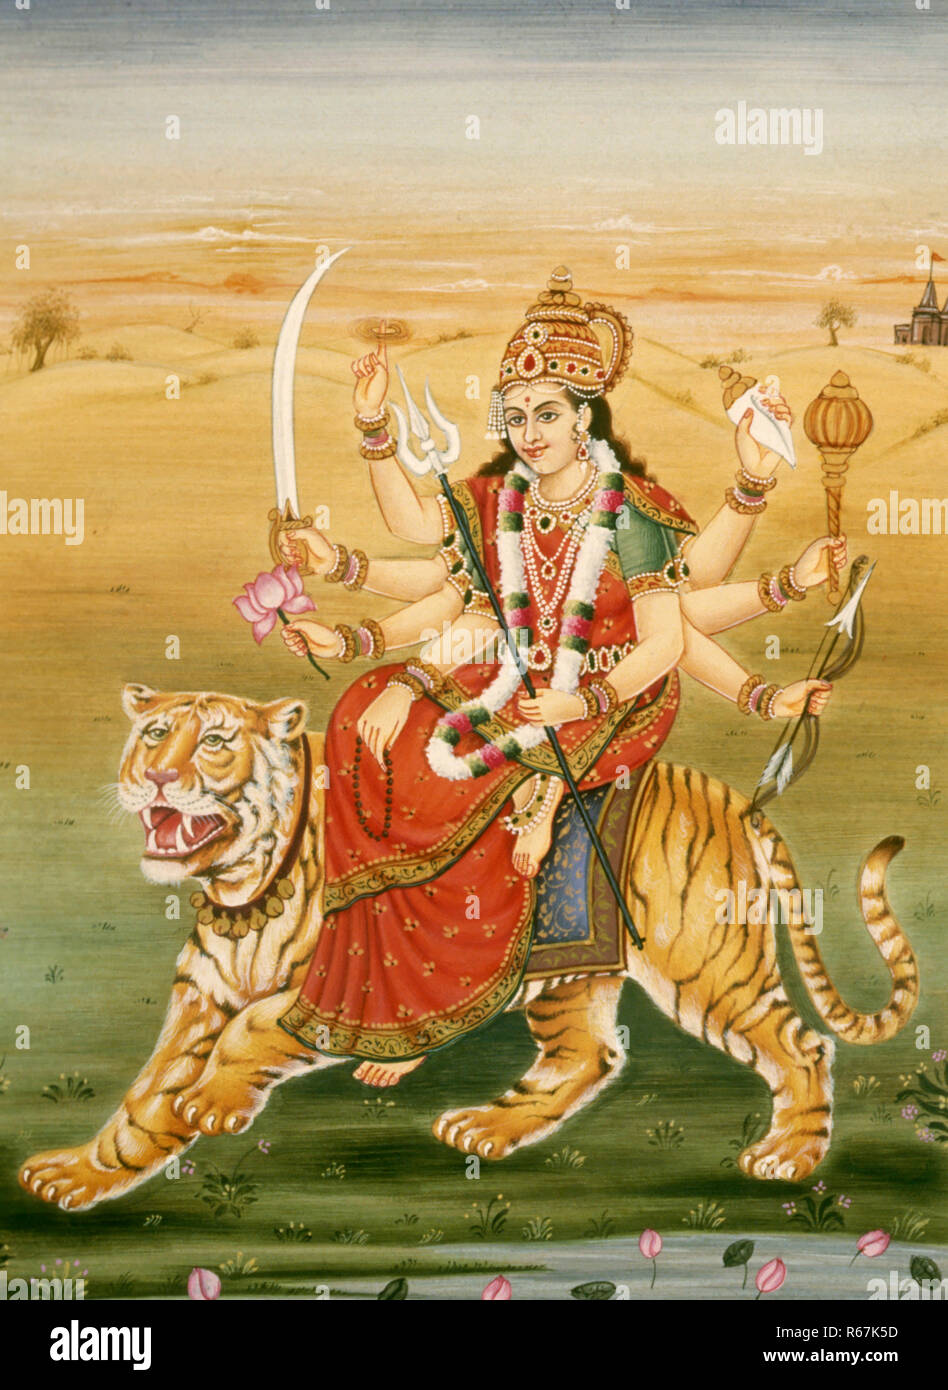 Déesse Durga assis tigre huit mains portant conch coquille mace Bow et flèche trident prière perles lotus fleur épée sudarshan chakra miniature peinture Inde Asie asiatique Indien Banque D'Images